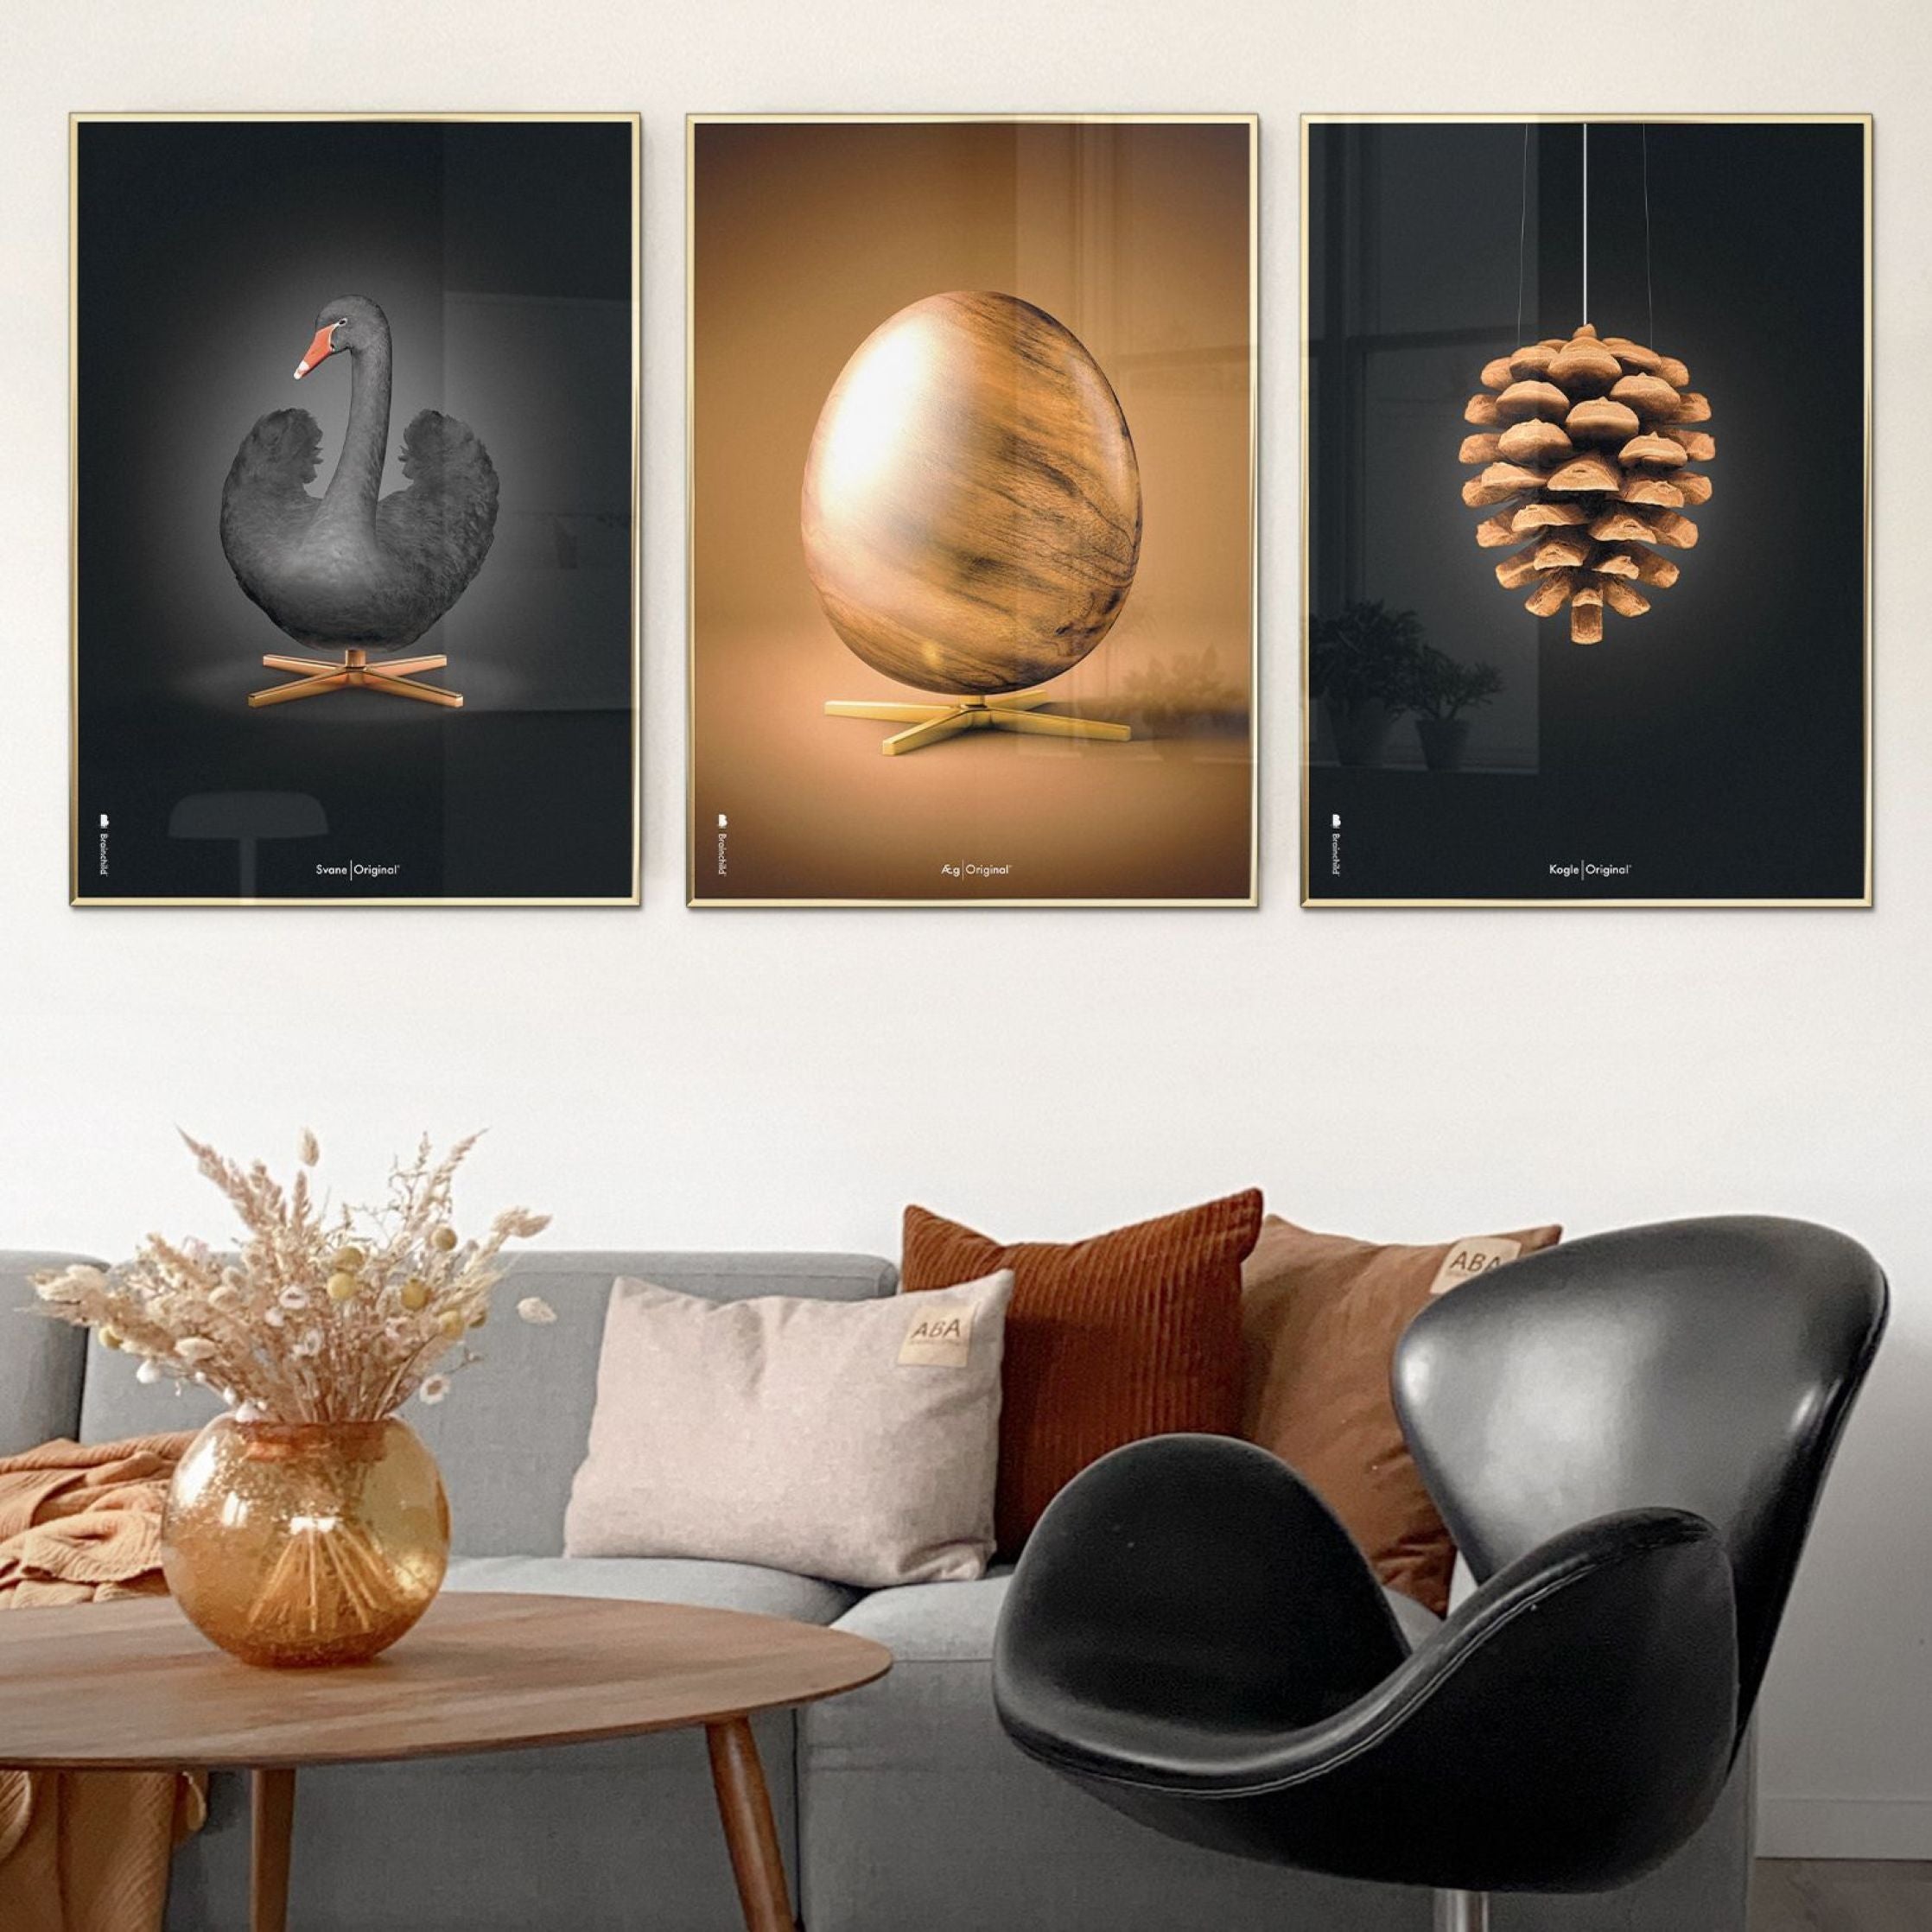 brainchild Swan Classic Poster, frame gemaakt van licht hout 50x70 cm, zwarte/zwarte achtergrond